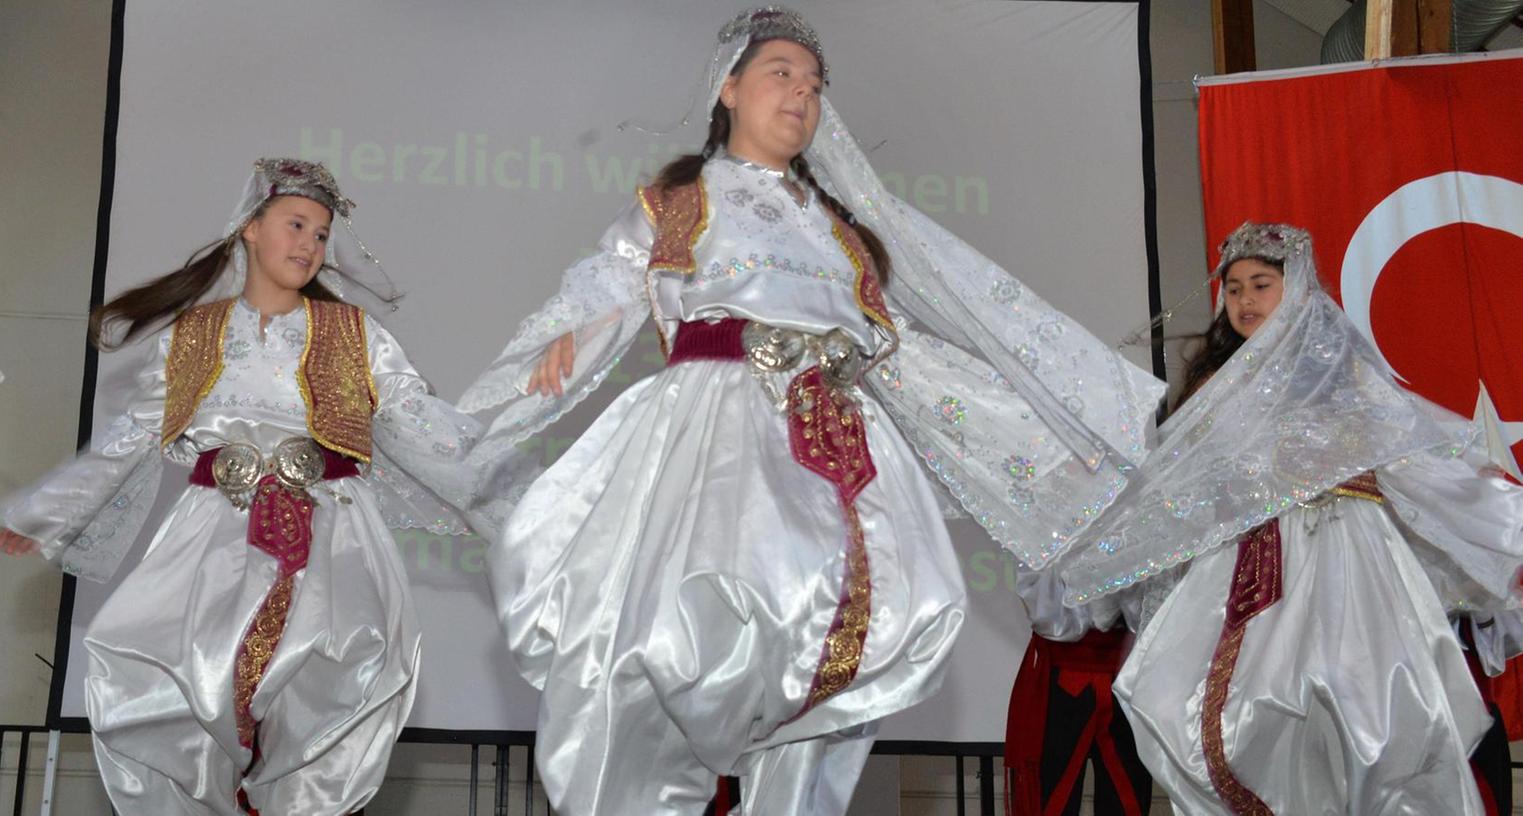 Tanzwütige Piraten und zarte Sheherazade beim internationalen Kinderfest